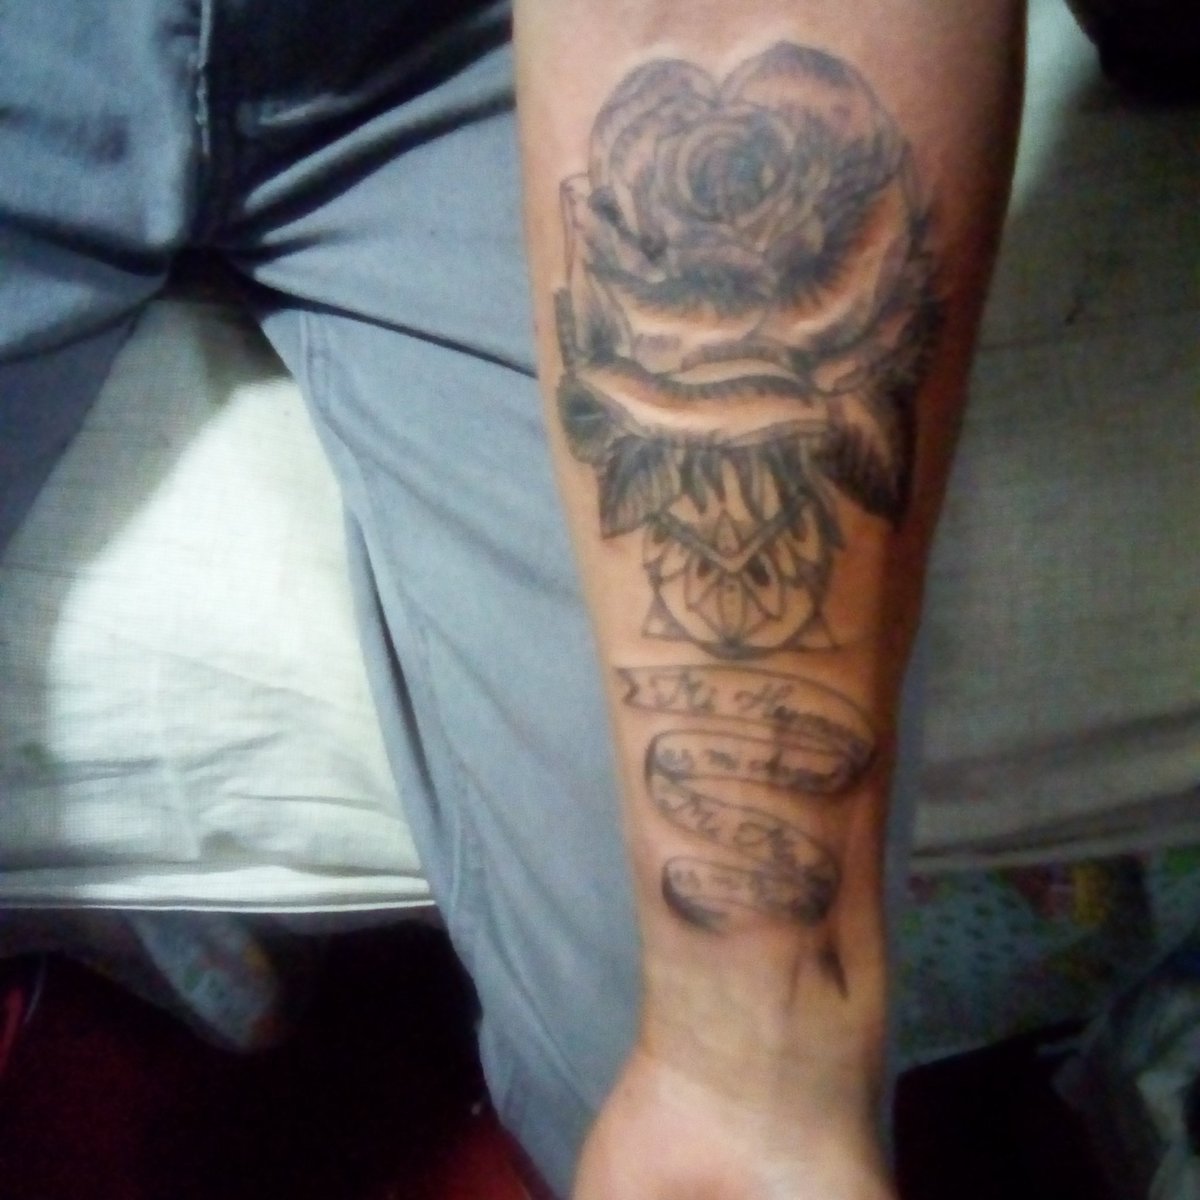 Este es uno de los diseños de hoy una rosa blackword con las palabras mi hermana es mi angel mi madre es mi vida'.
.
.
.
.
.
.
.
.
.

#tatuajes #tattoooftheworld #tattooofinstagram #tattoooftheday #tattoo #tattooflowers #caracastattoo #venezuela #venezuelatattoo #newtatto